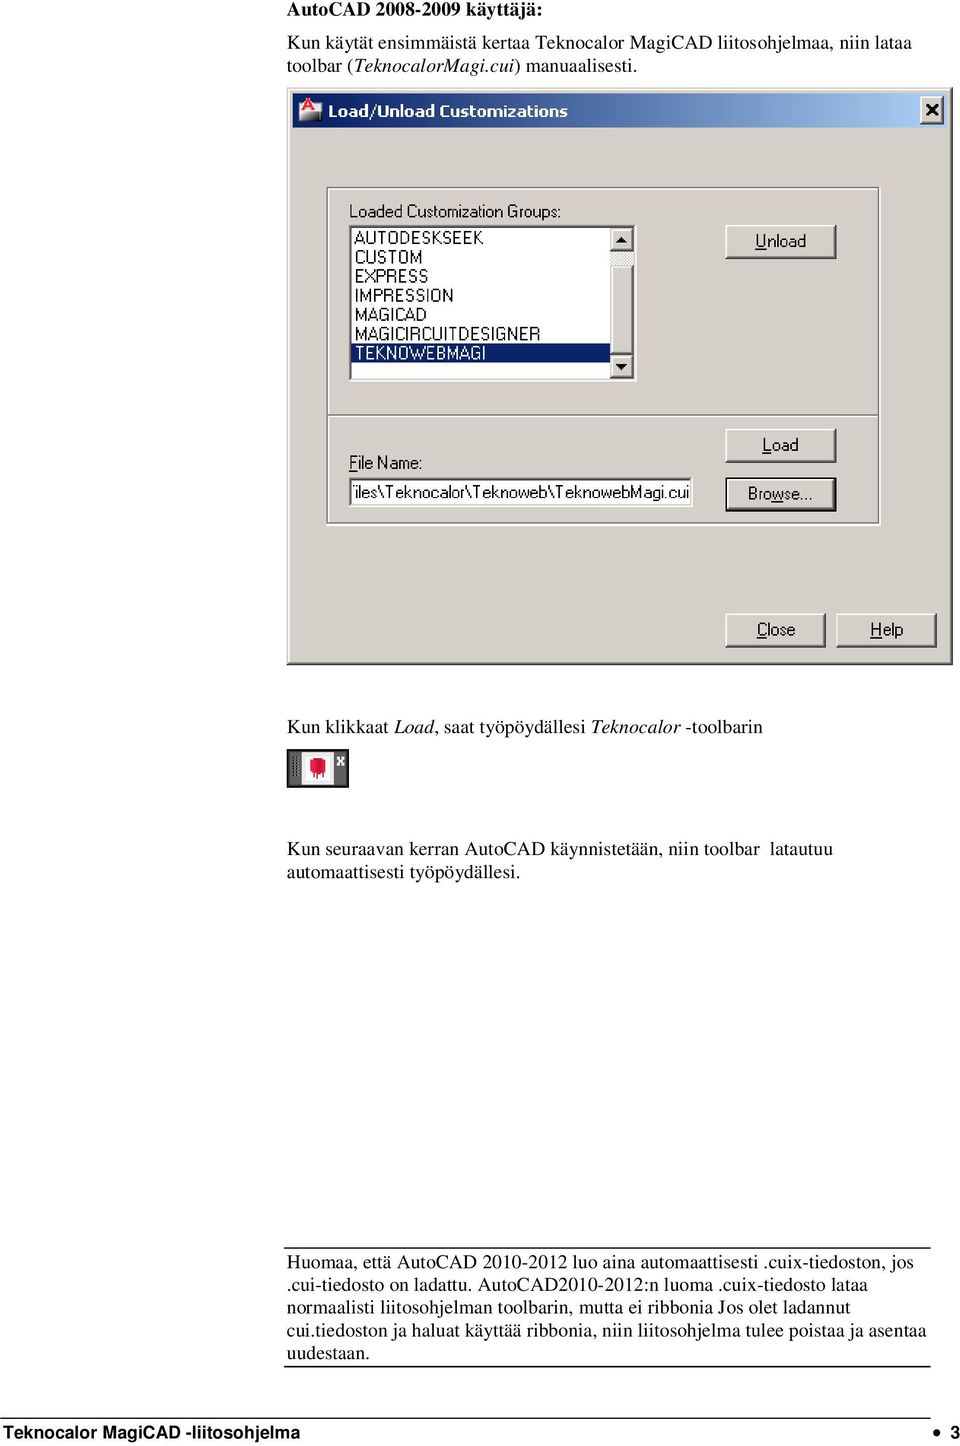 Huomaa, että AutoCAD 2010-2012 luo aina automaattisesti.cuix-tiedoston, jos.cui-tiedosto on ladattu. AutoCAD2010-2012:n luoma.